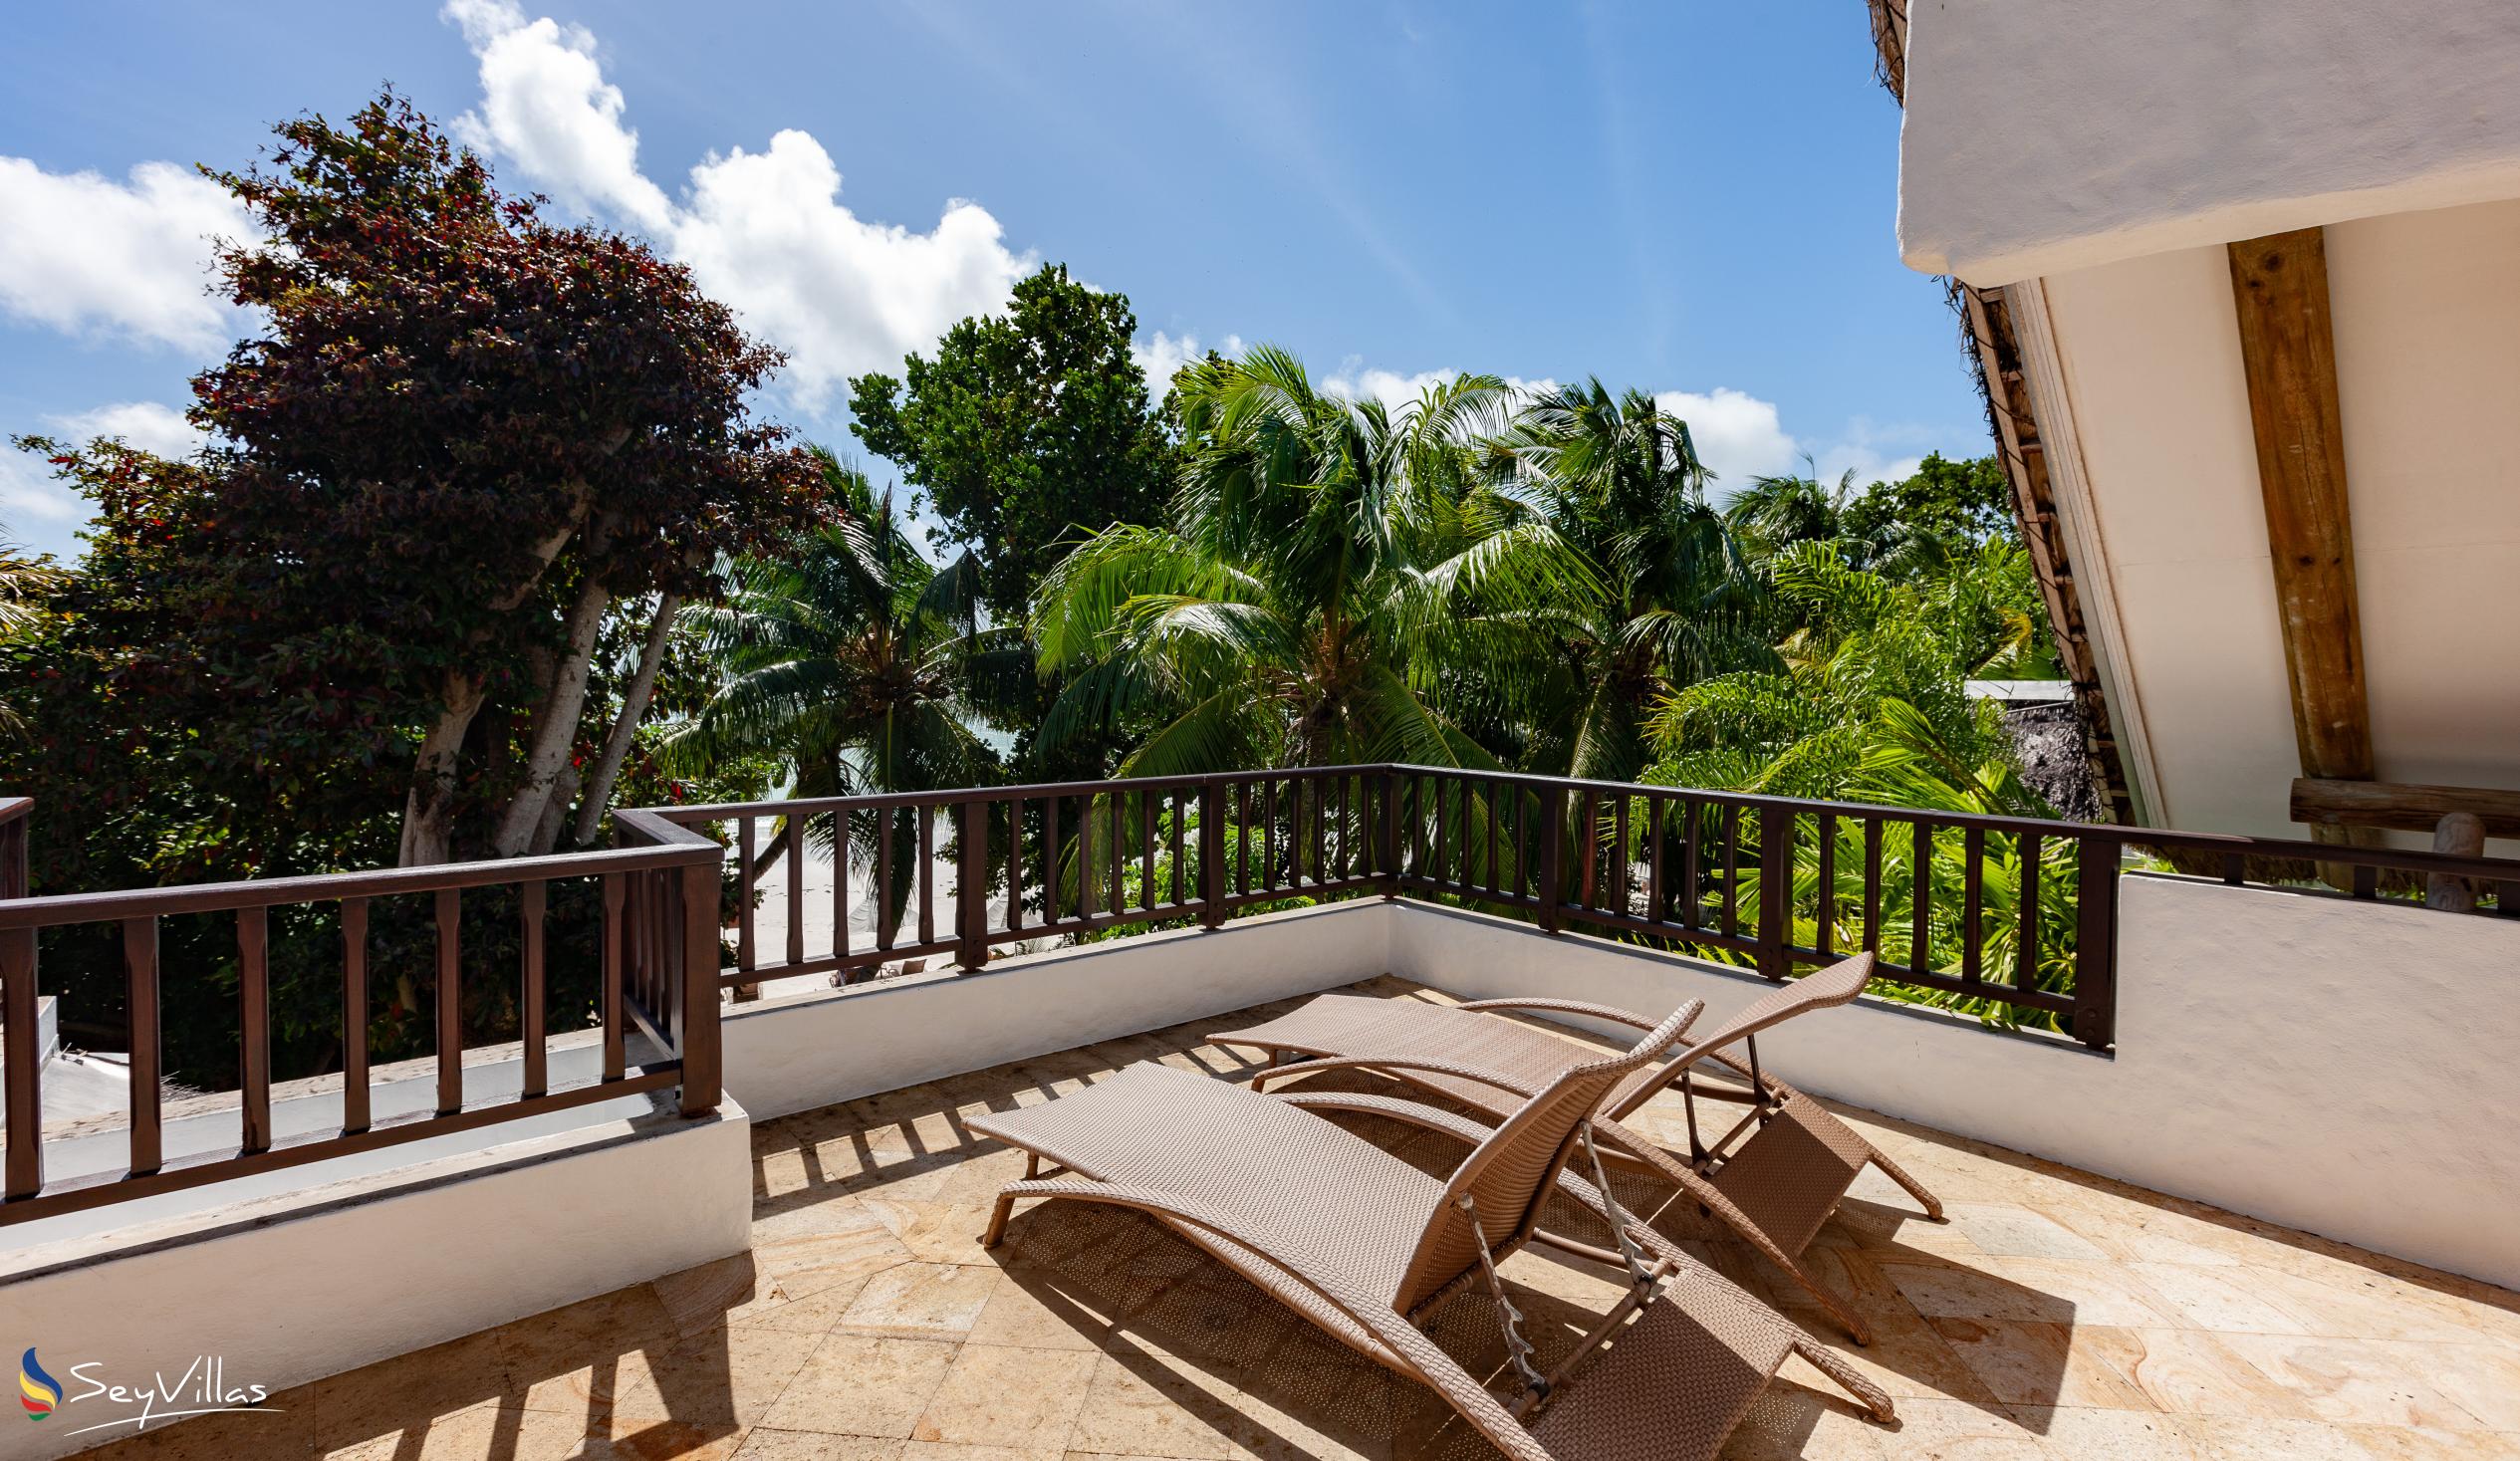 Photo 62: Village du Pecheur - Beachfront Terrace Suite - Praslin (Seychelles)